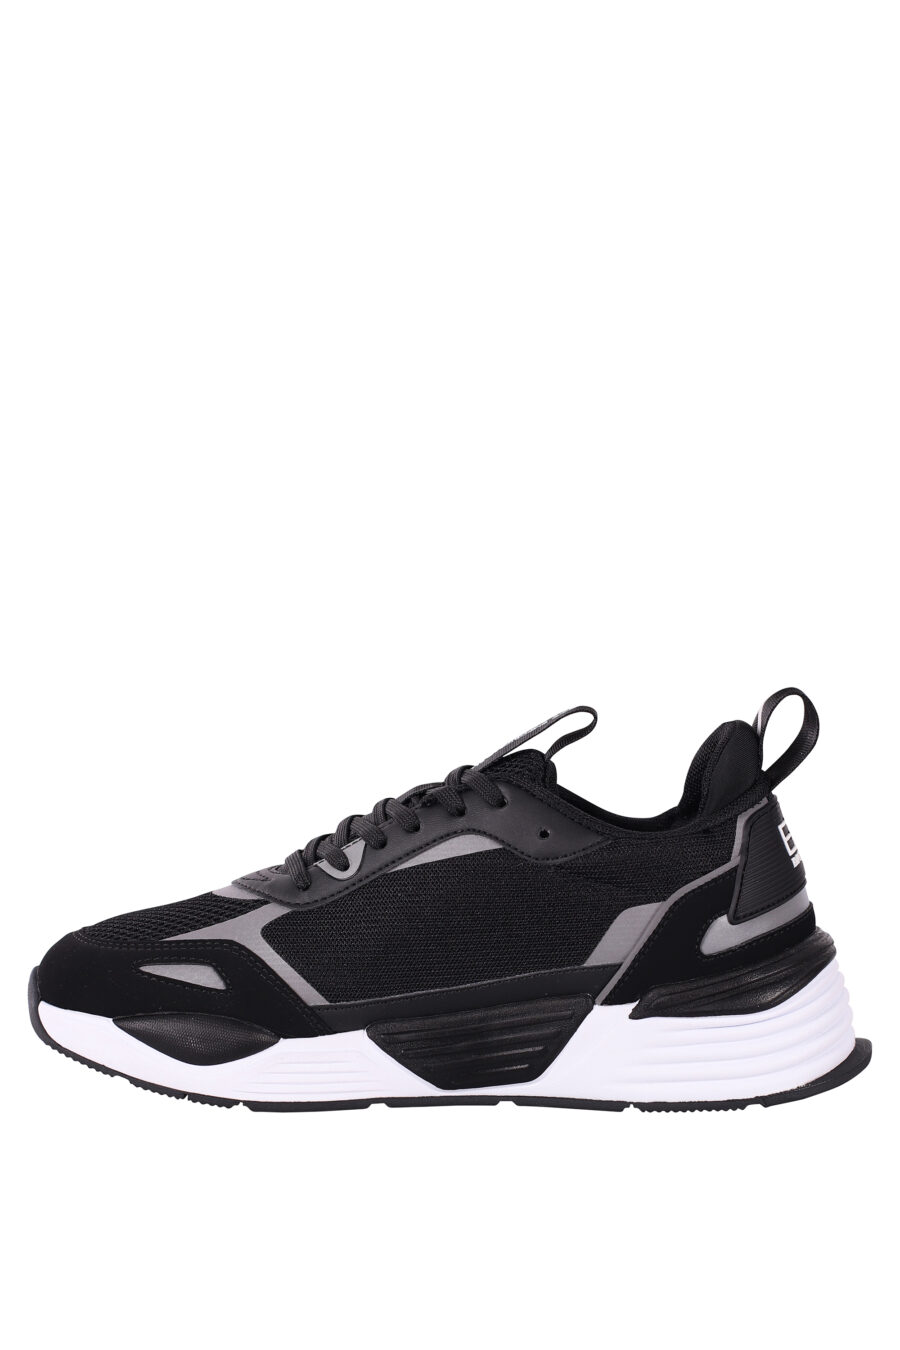 Zapatillas negras y plateado "ace runner" con logo de aguila - IMG 5801